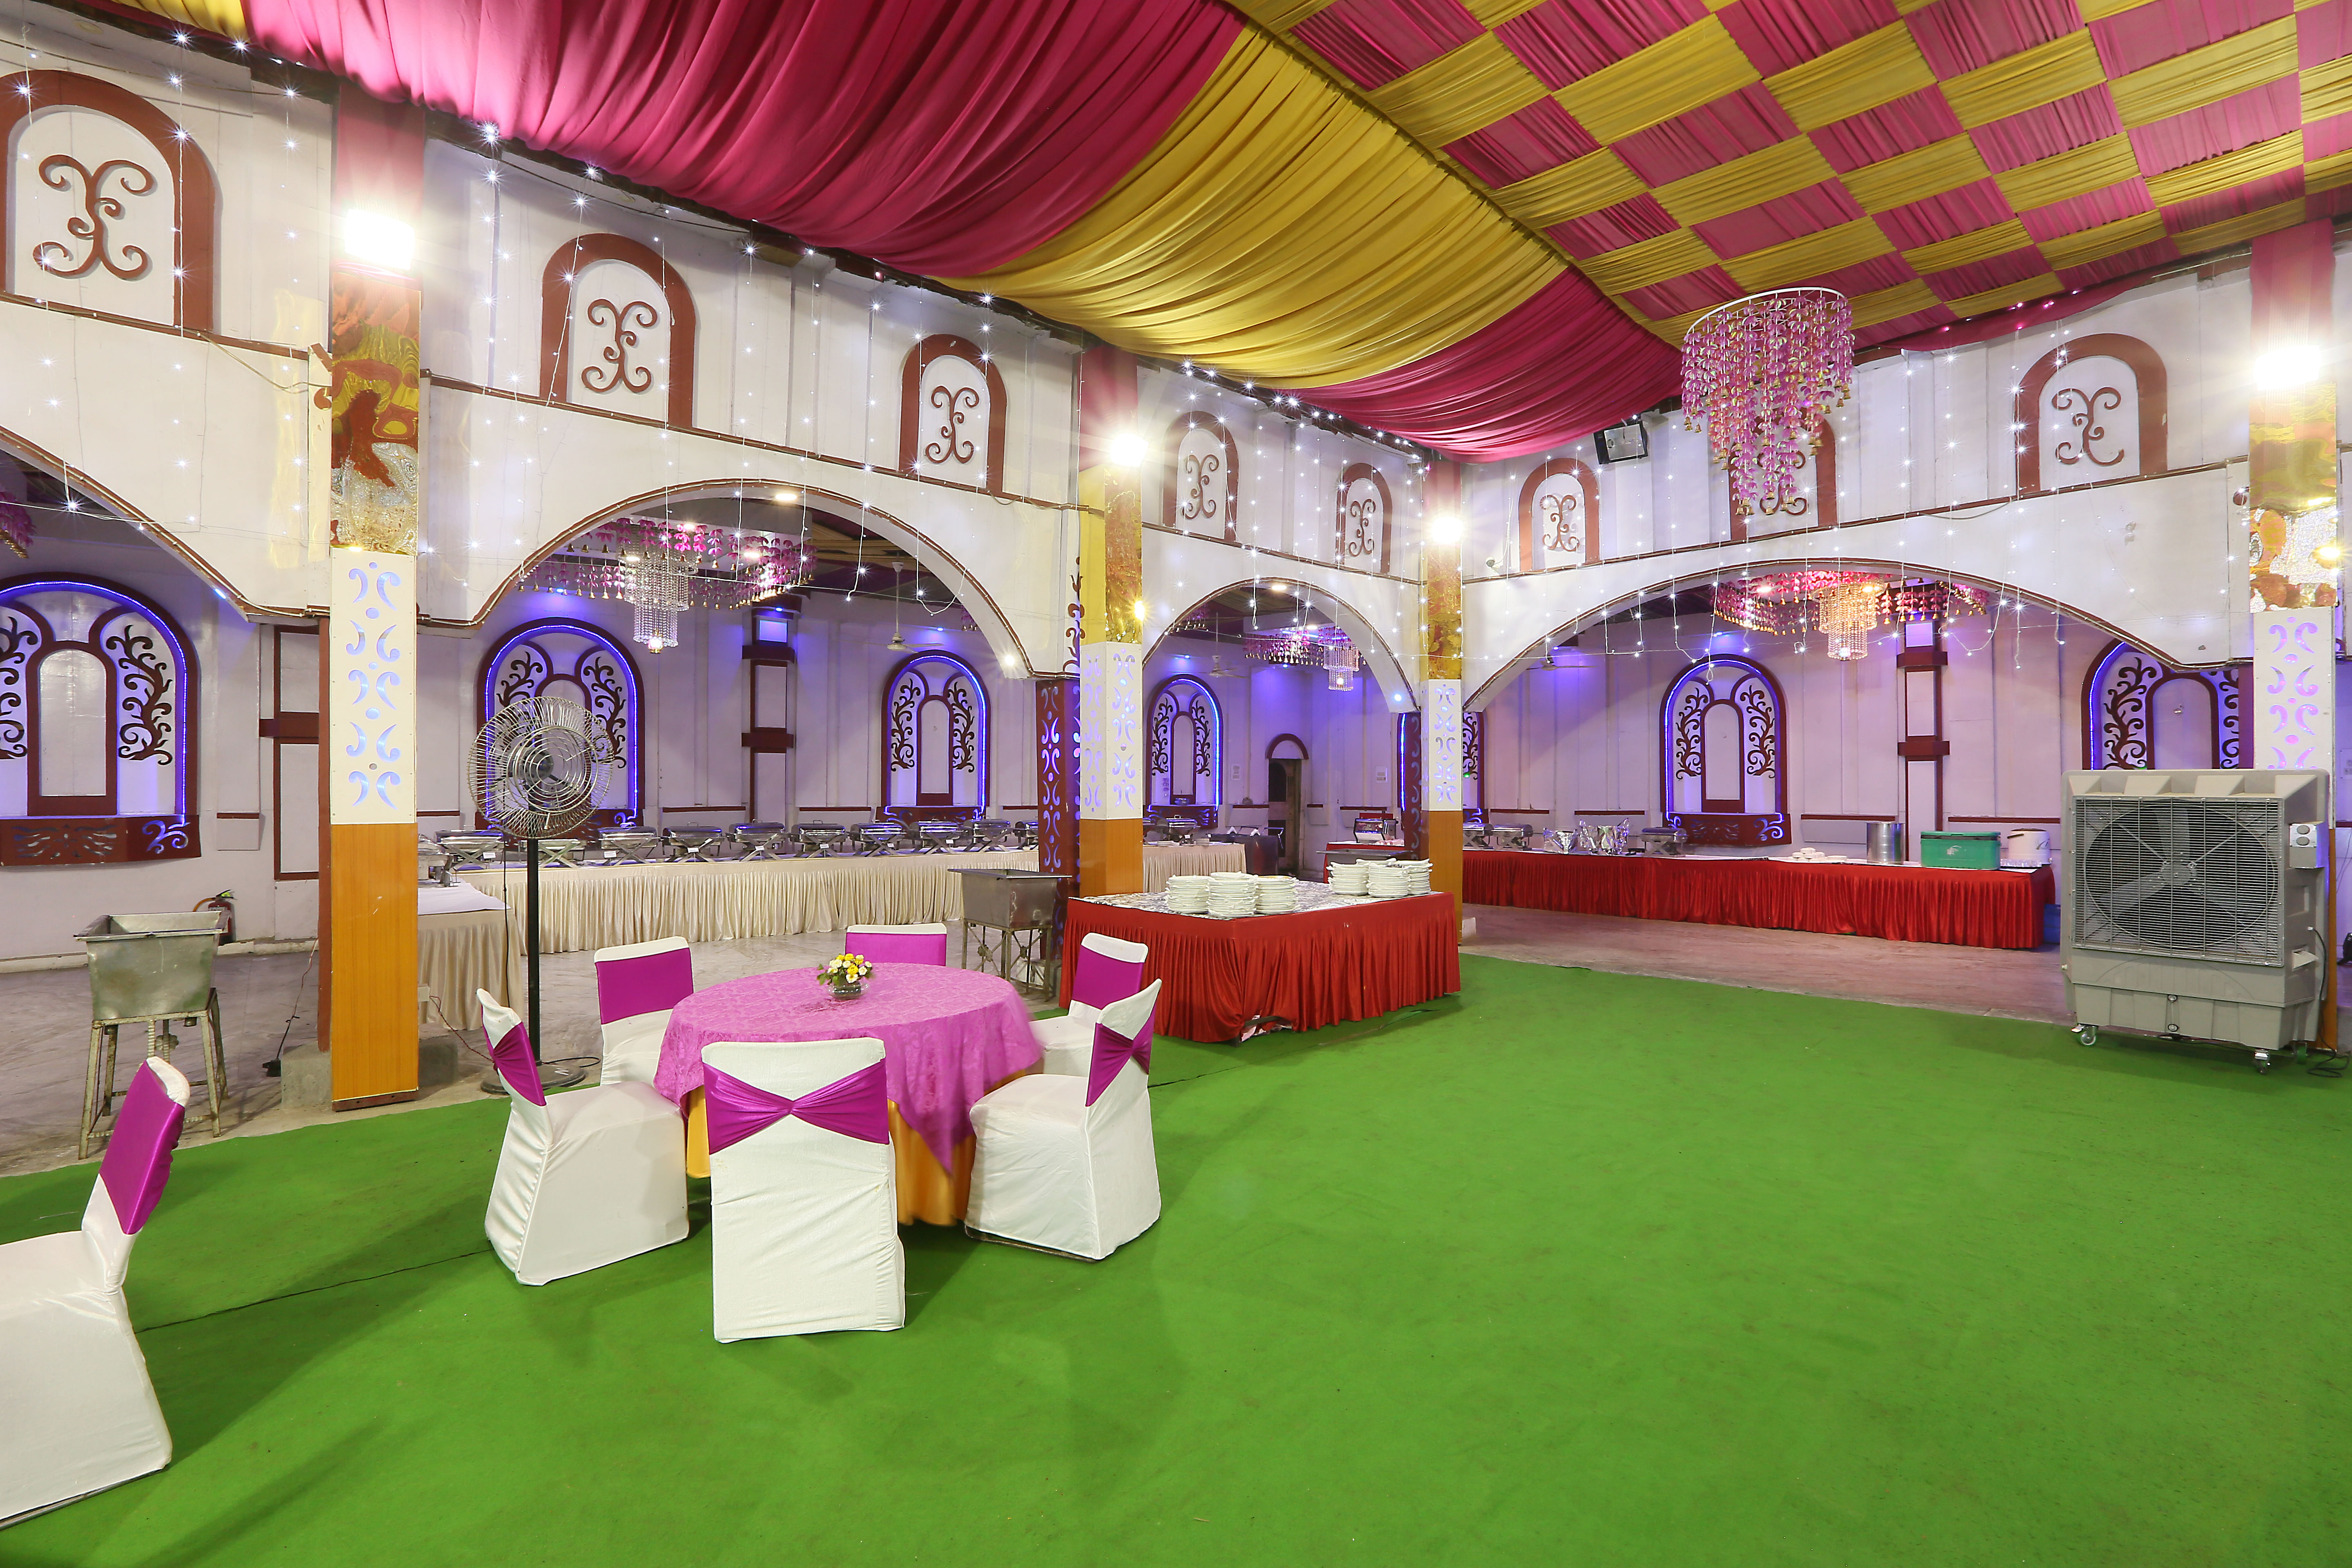 Anand Mangal Banquet in Dwarka, Delhi